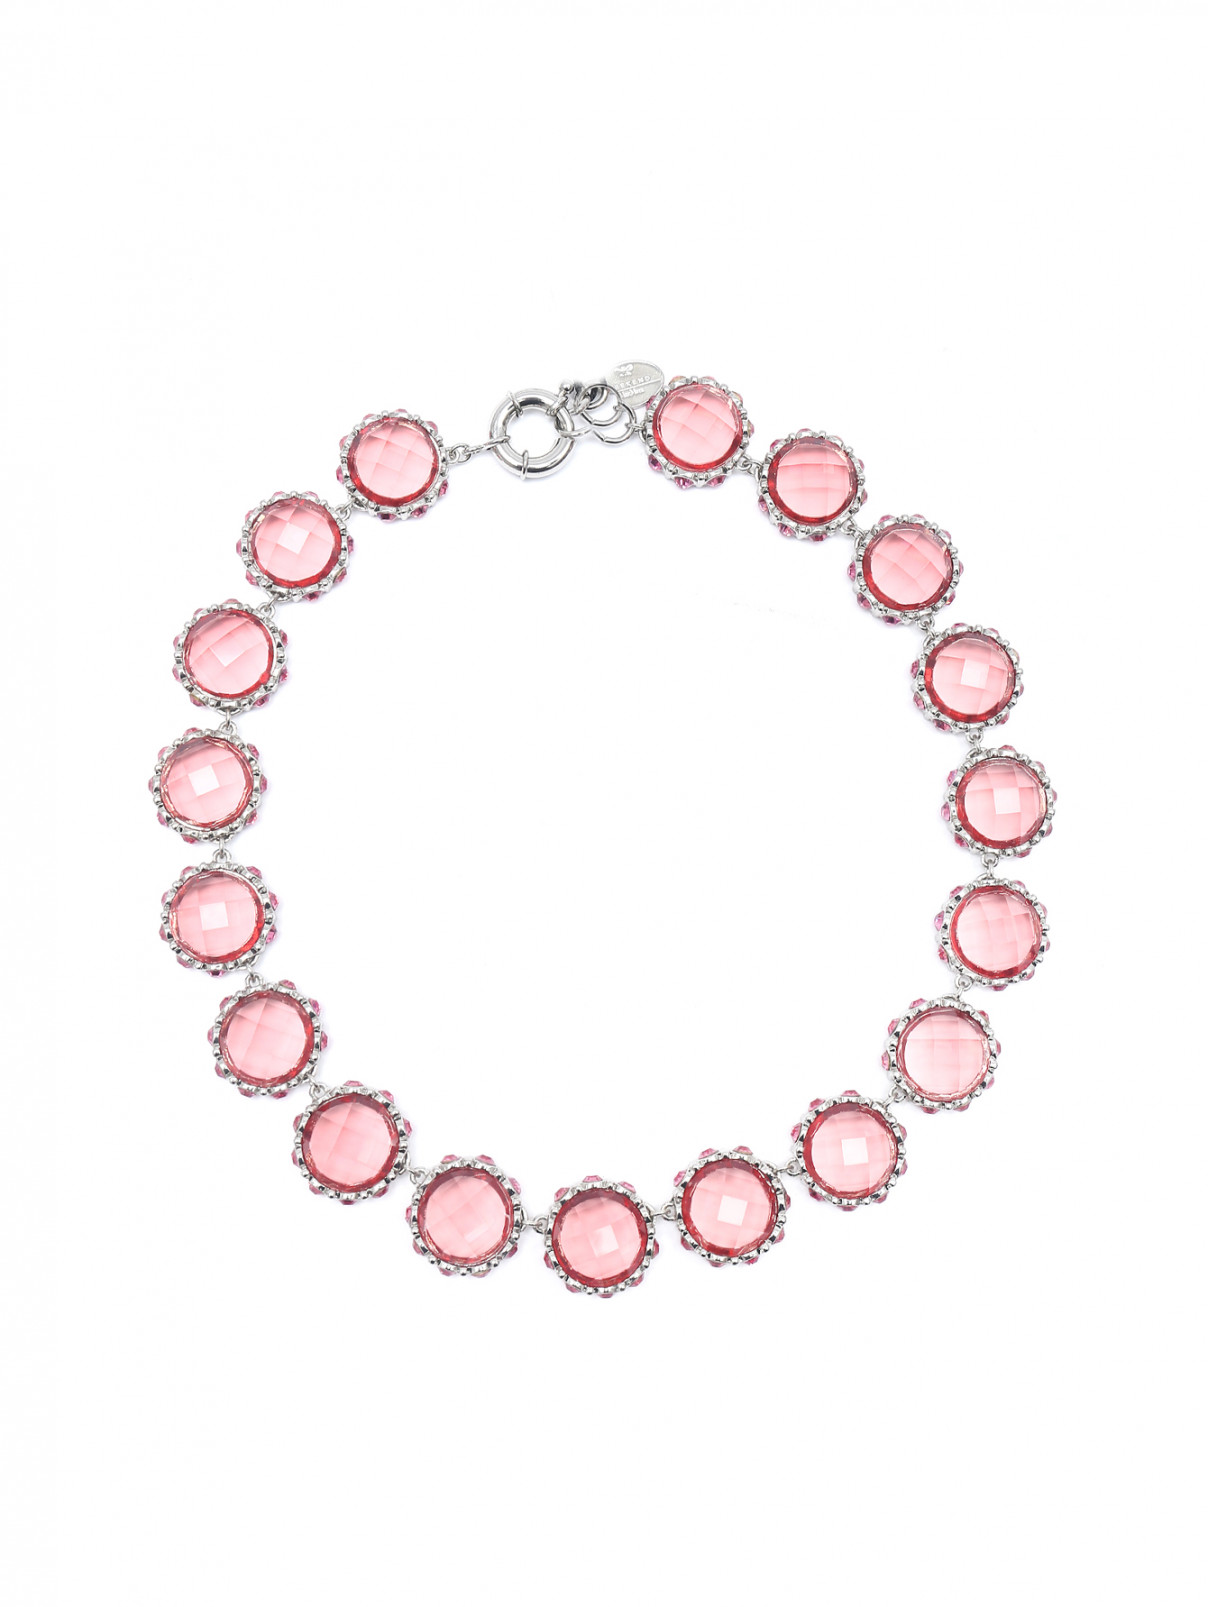 Ожерелье из металла и стекла с кристаллами Weekend Max Mara  –  Общий вид  – Цвет:  Розовый